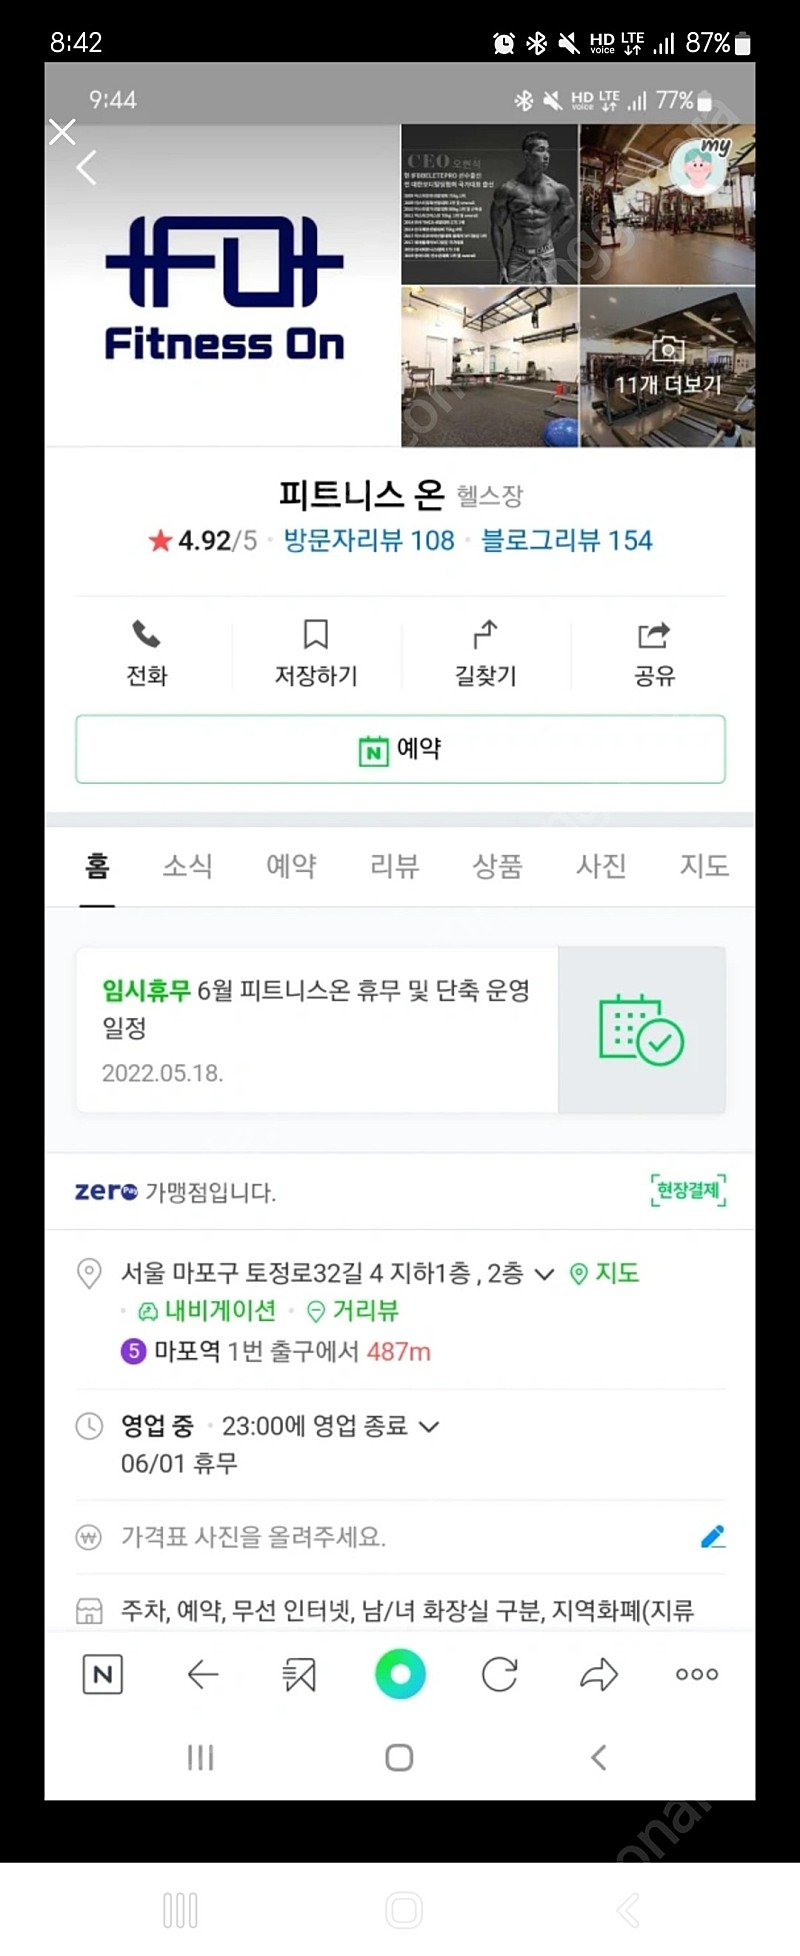 마포구 용강동 피트니스온 헬스장, 그룹 필라테스 양도(10개월)